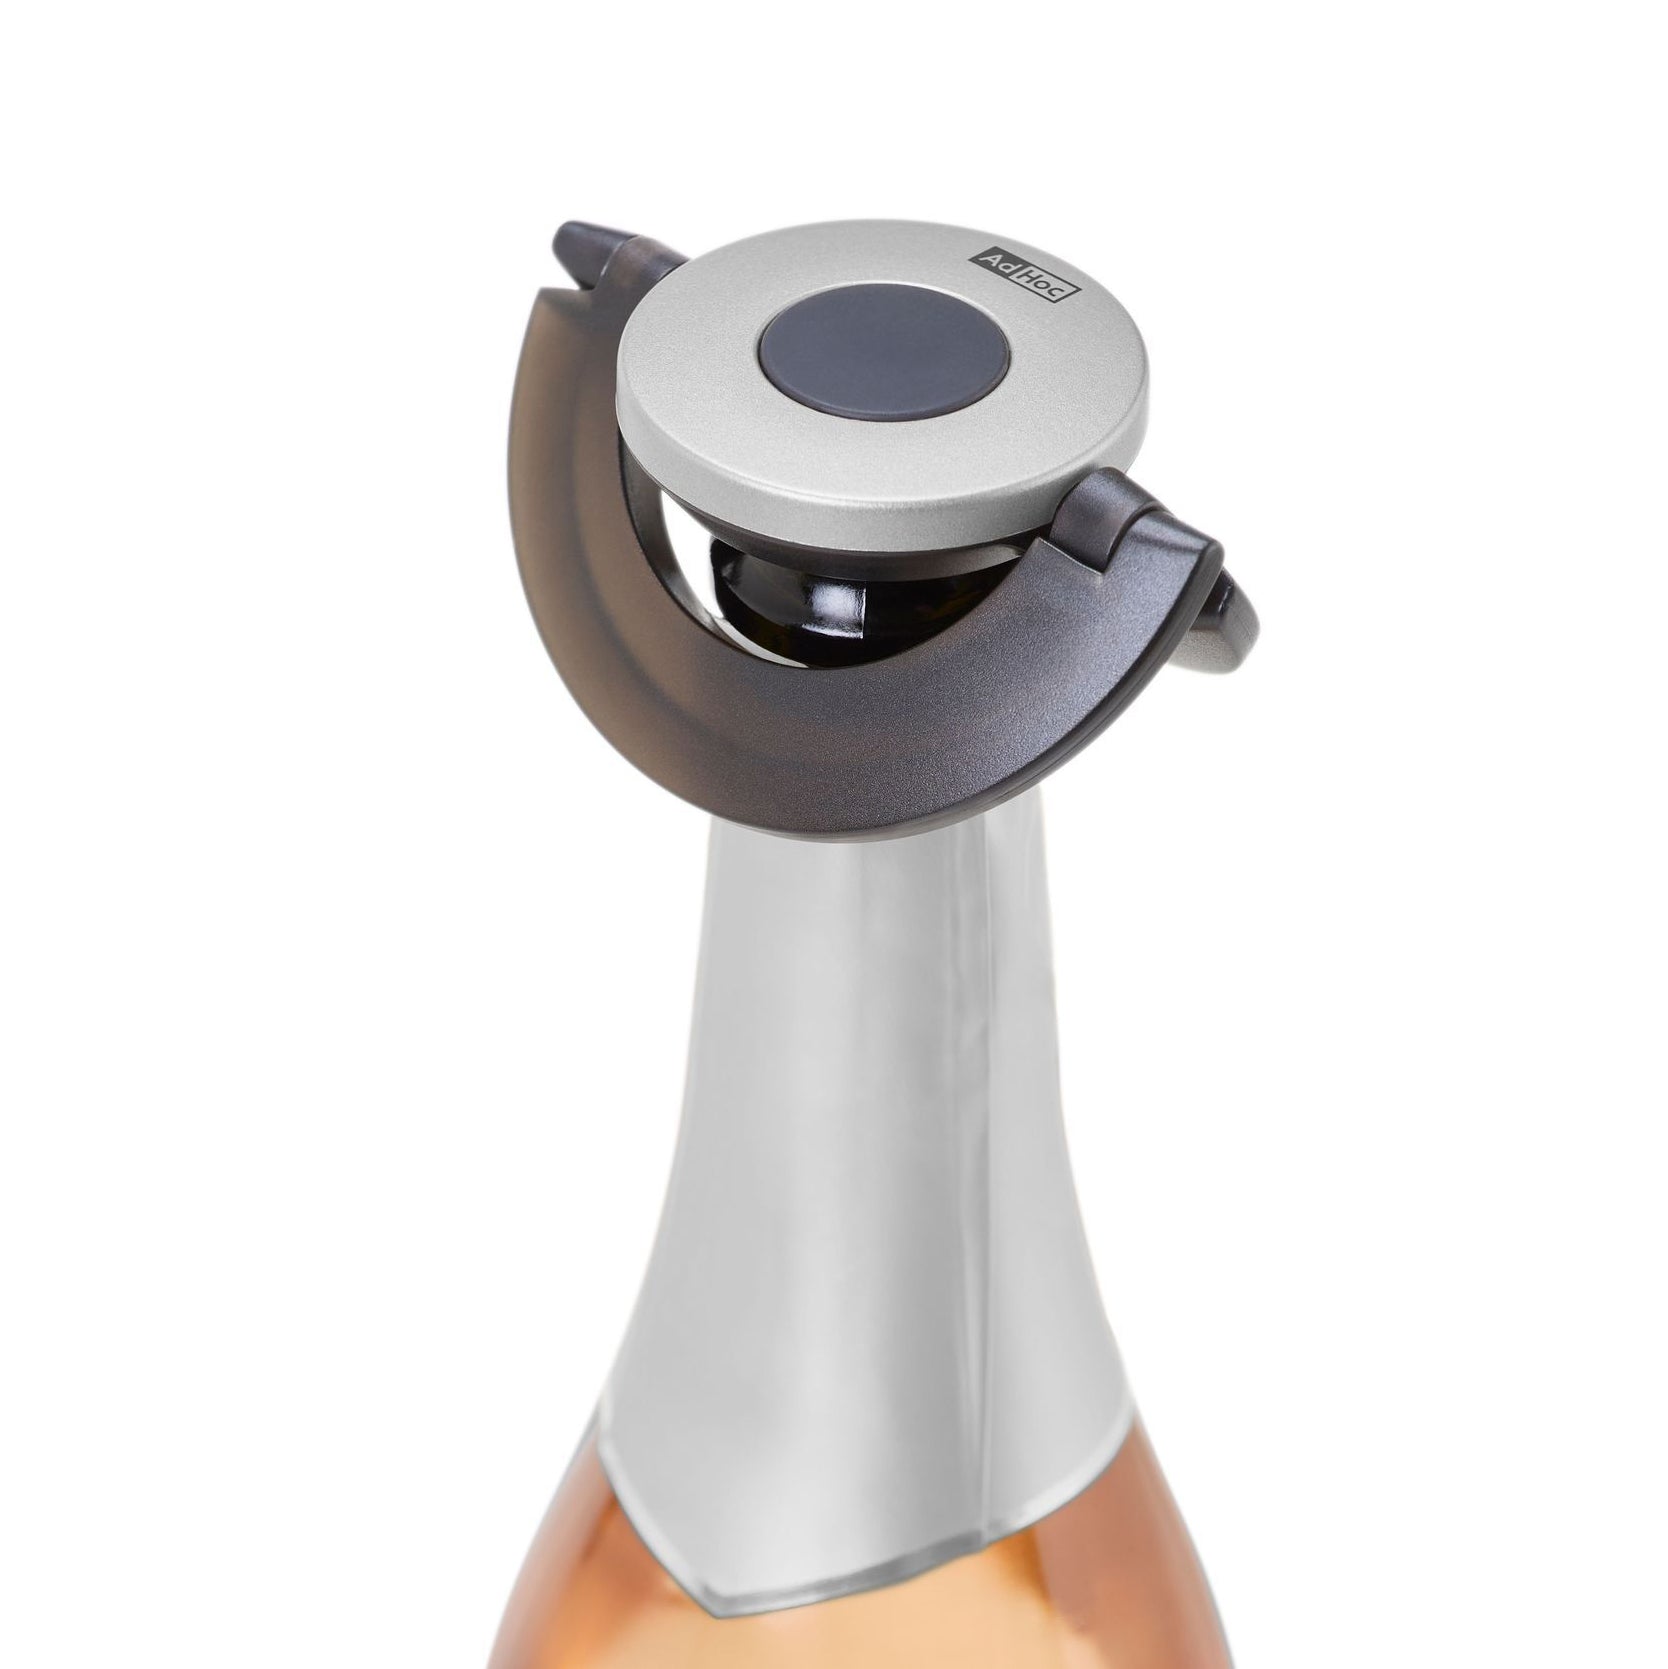 Hals van rosé champagnefles met grijs-zwarte champagnestop Gusto van Ad Hoc